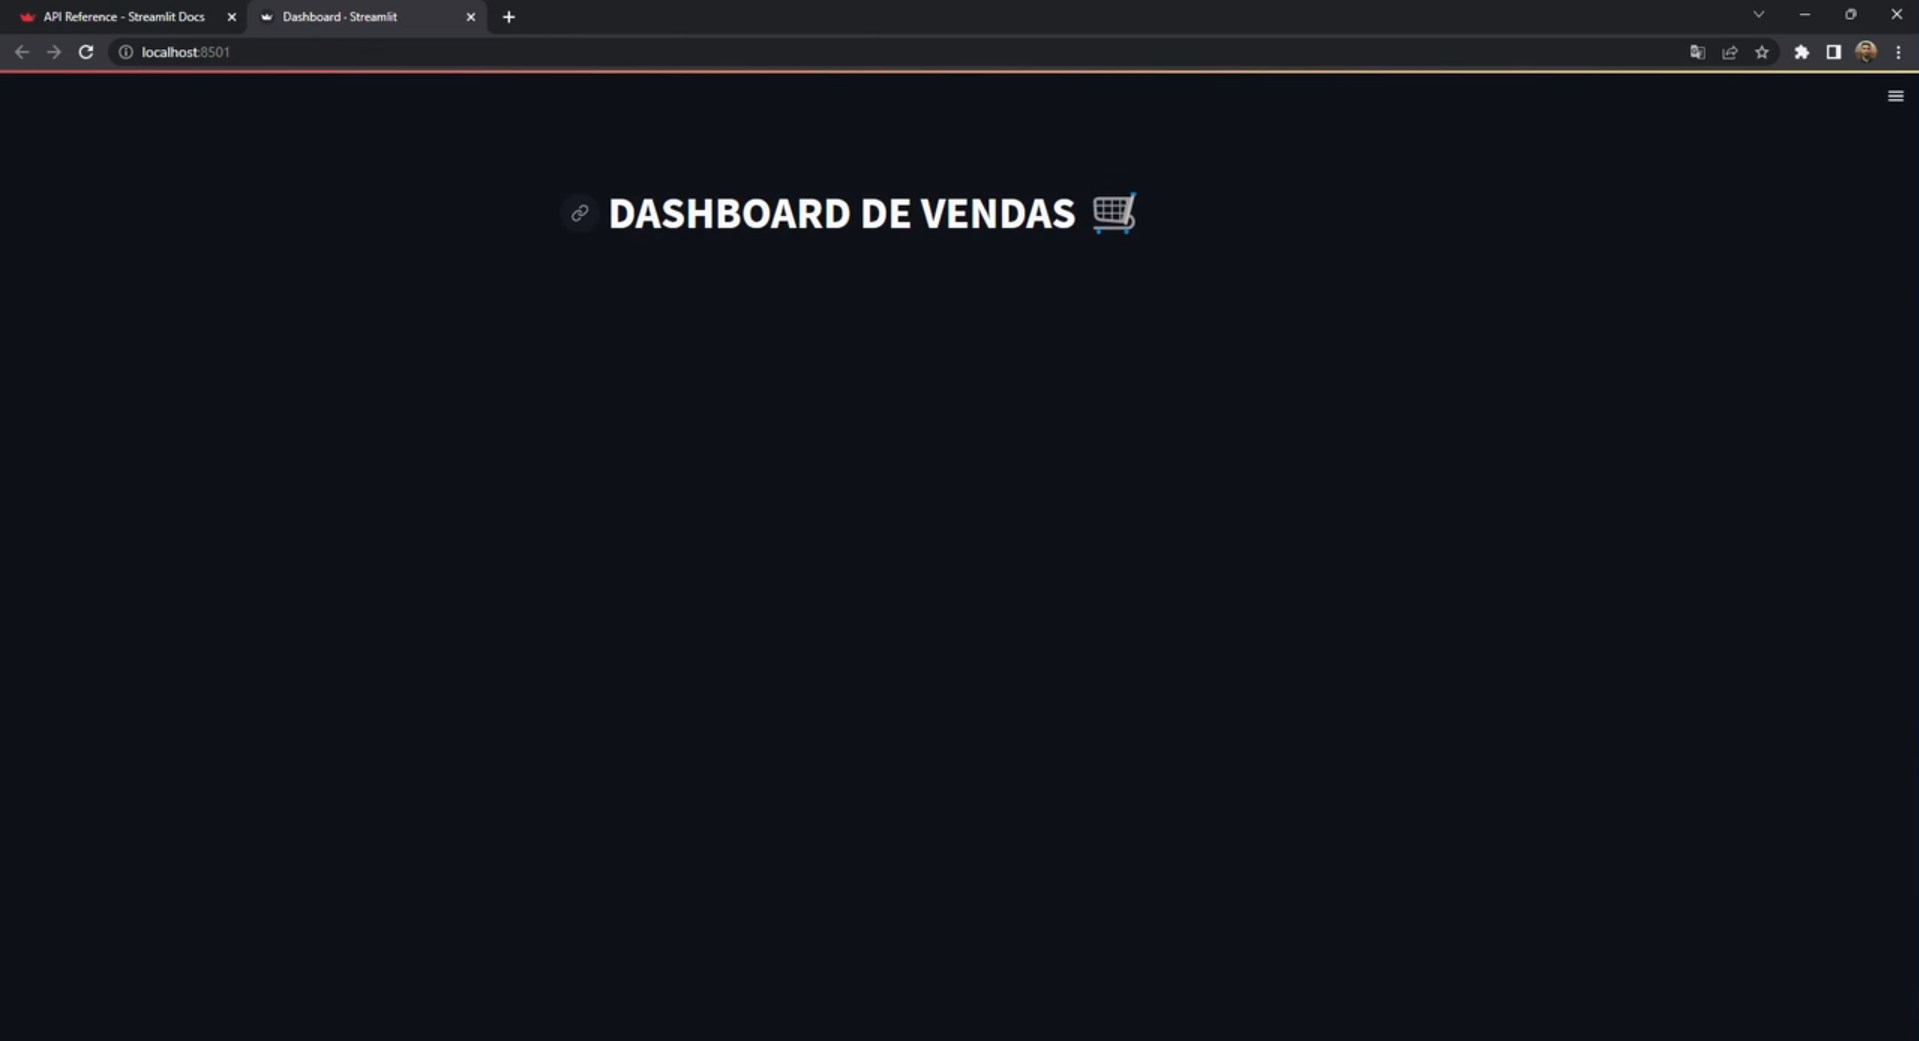 Página de dashboard do Streamlit aberta no navegador, com o título "DASHBOARD DE VENDAS" escrito em branco e o emoji de um carrinho de compras cinza dispostos lado a lado sobre um fundo preto.